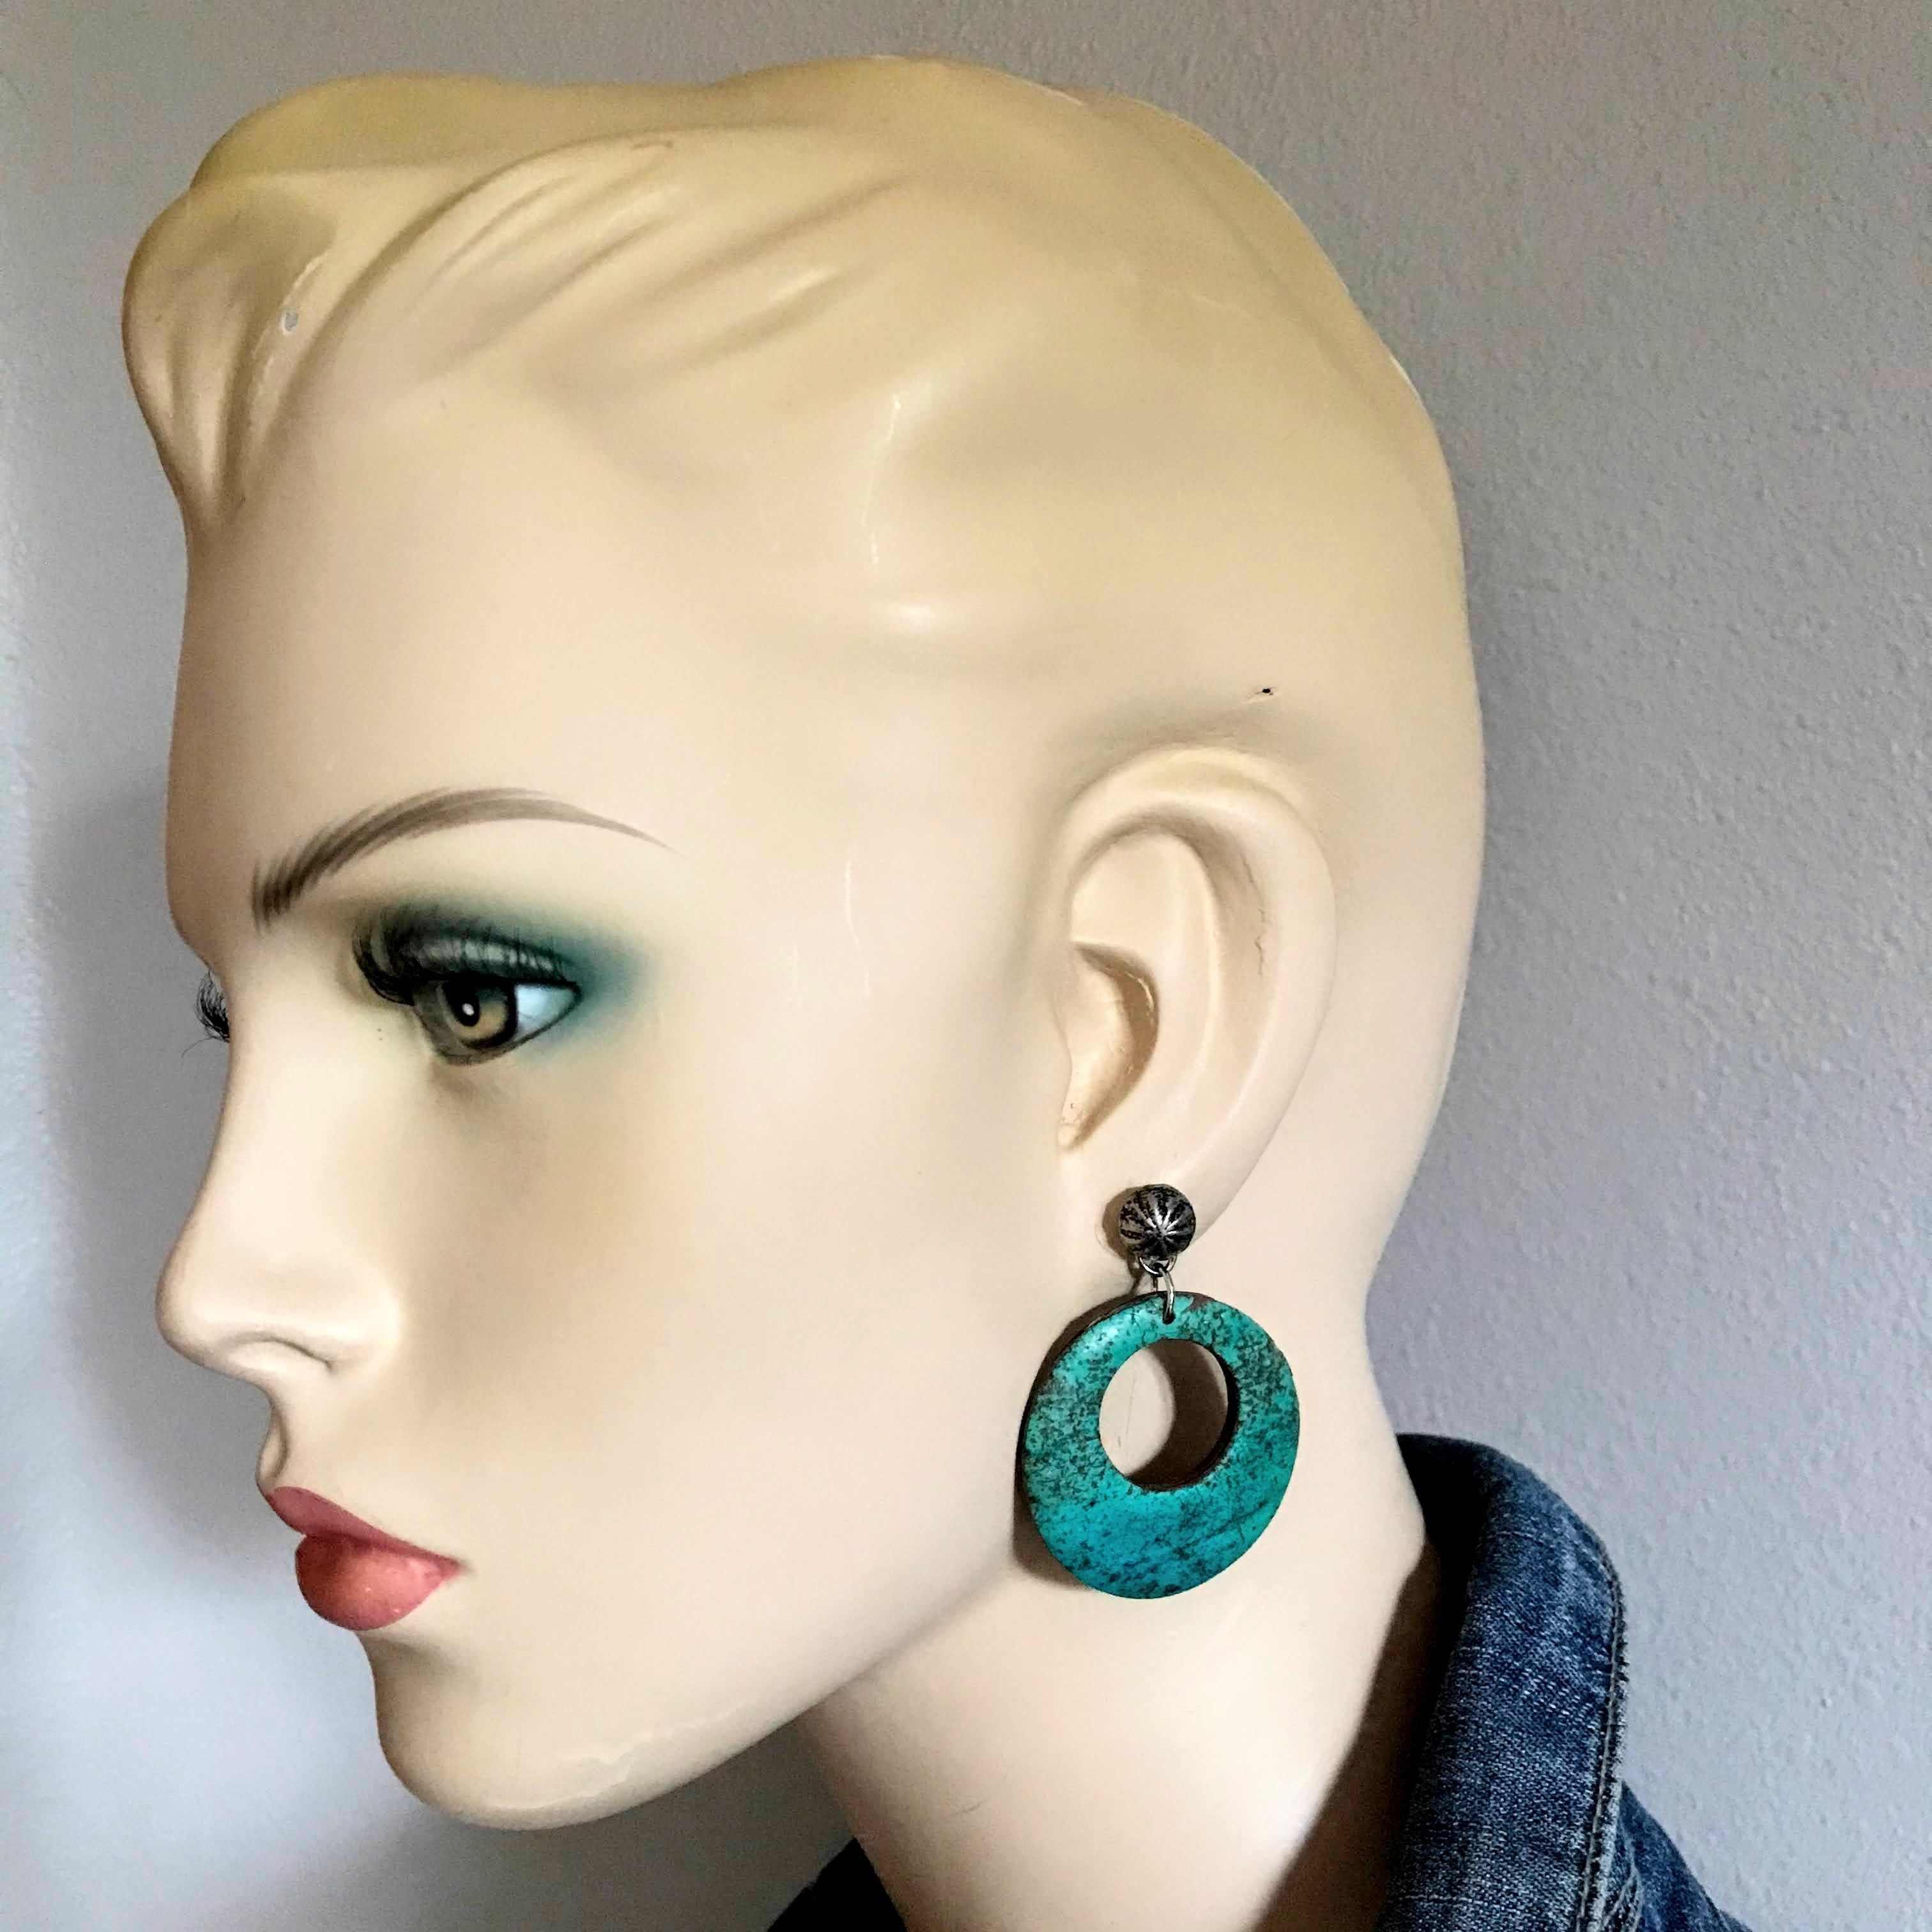 Ennis Earrings, Faux stone Turquoise